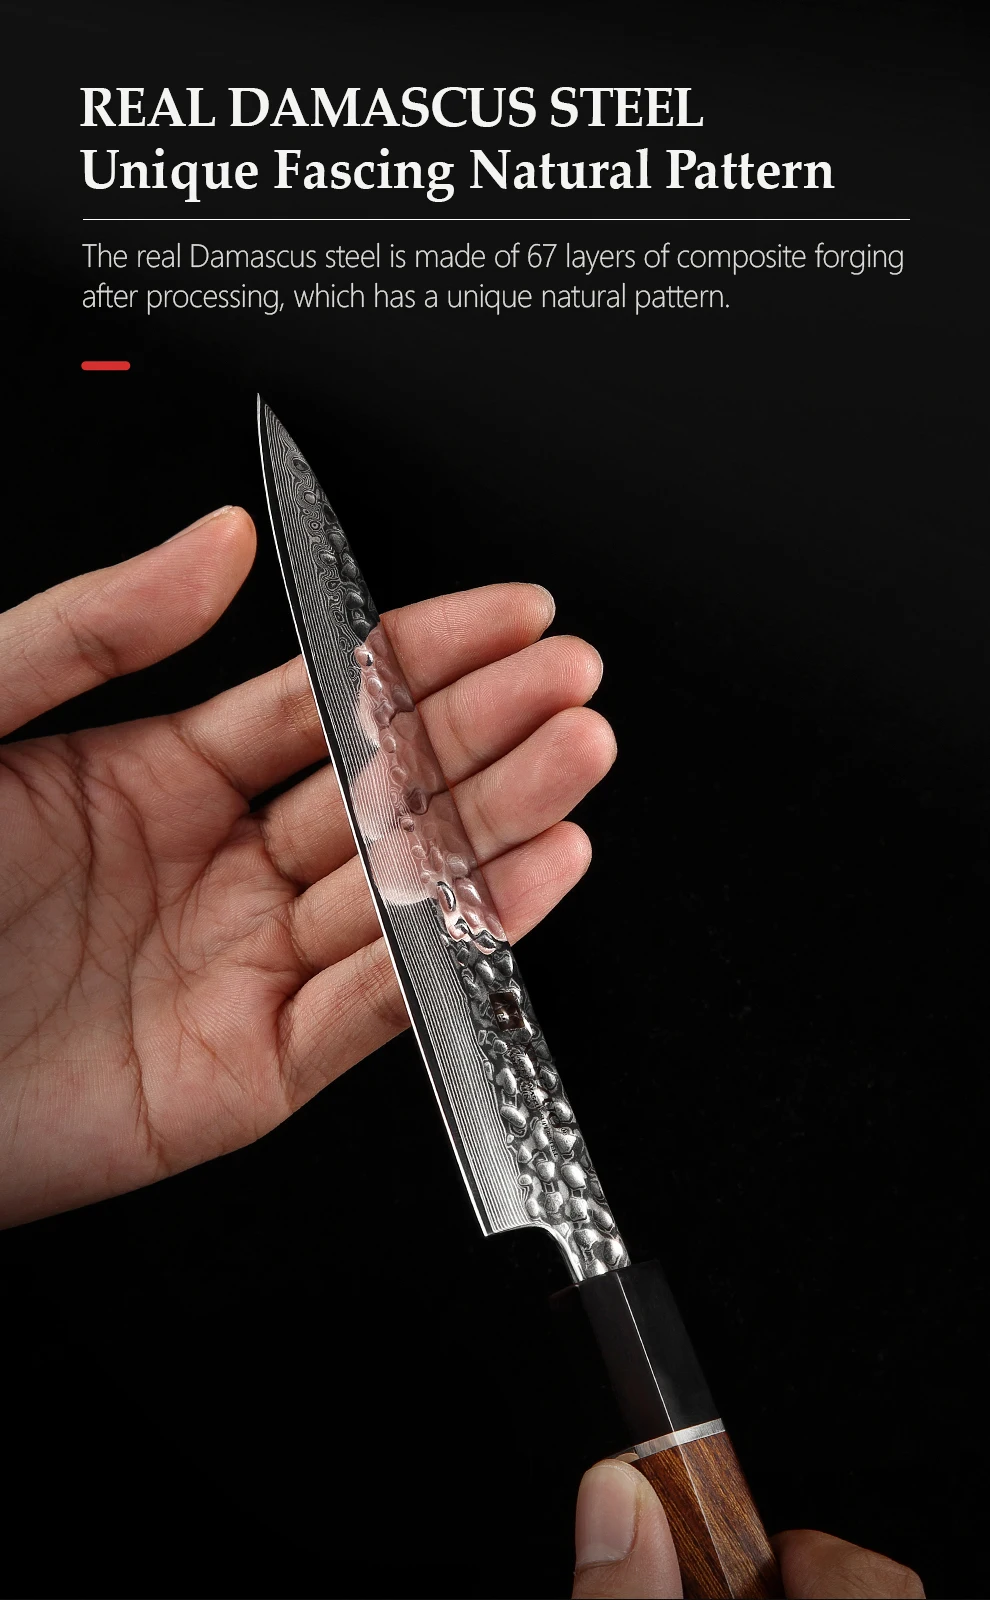 xinzuo polegada knife faca de serviço público camadas japonês damasco faca de cozinha de aço afiada facas com punho de madeira de ferro